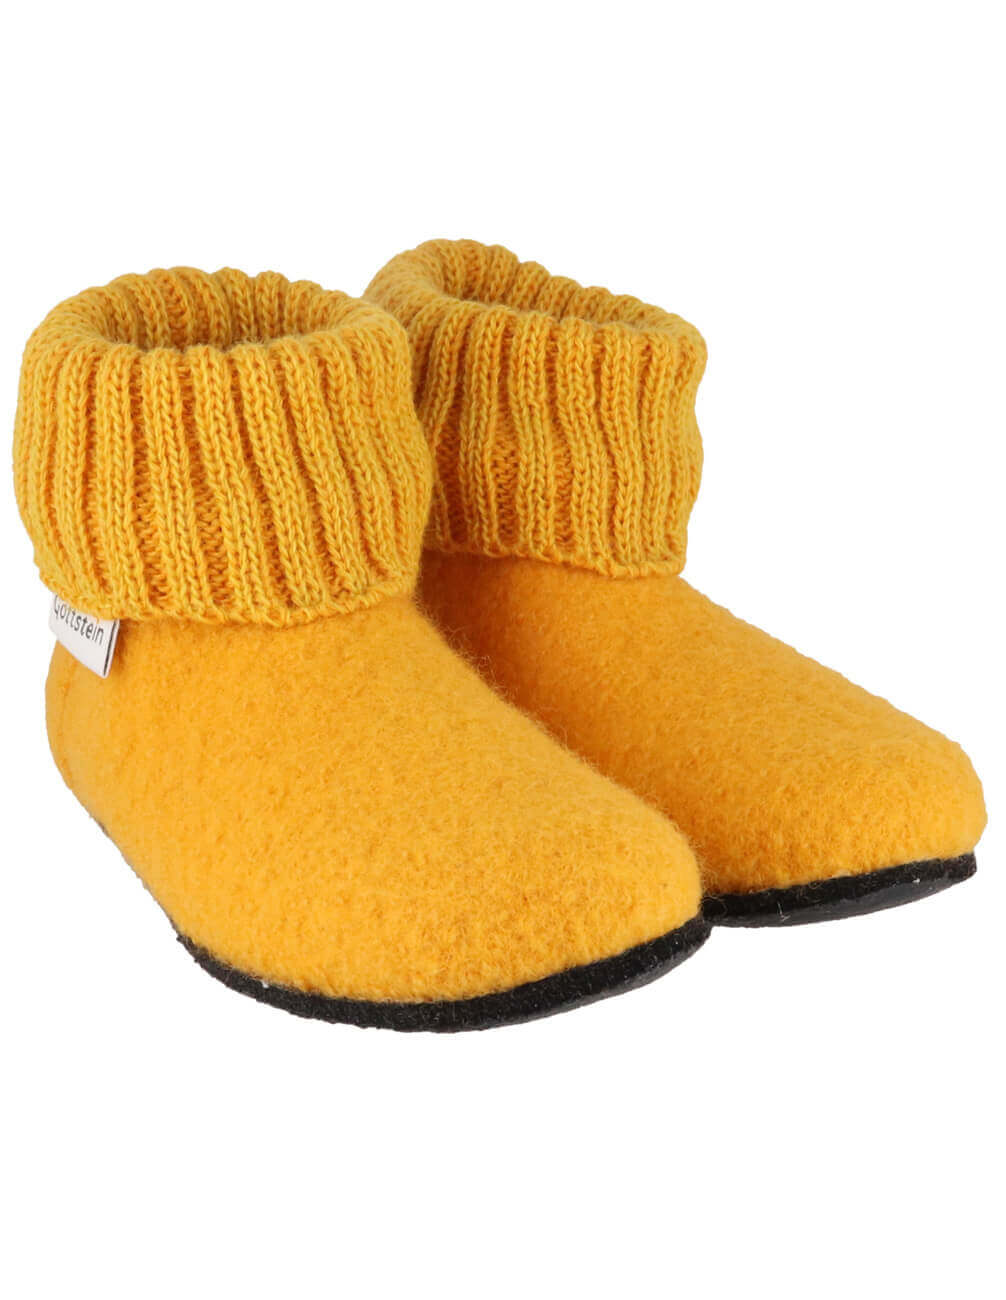 Kids Slipper Boots | Target Australia